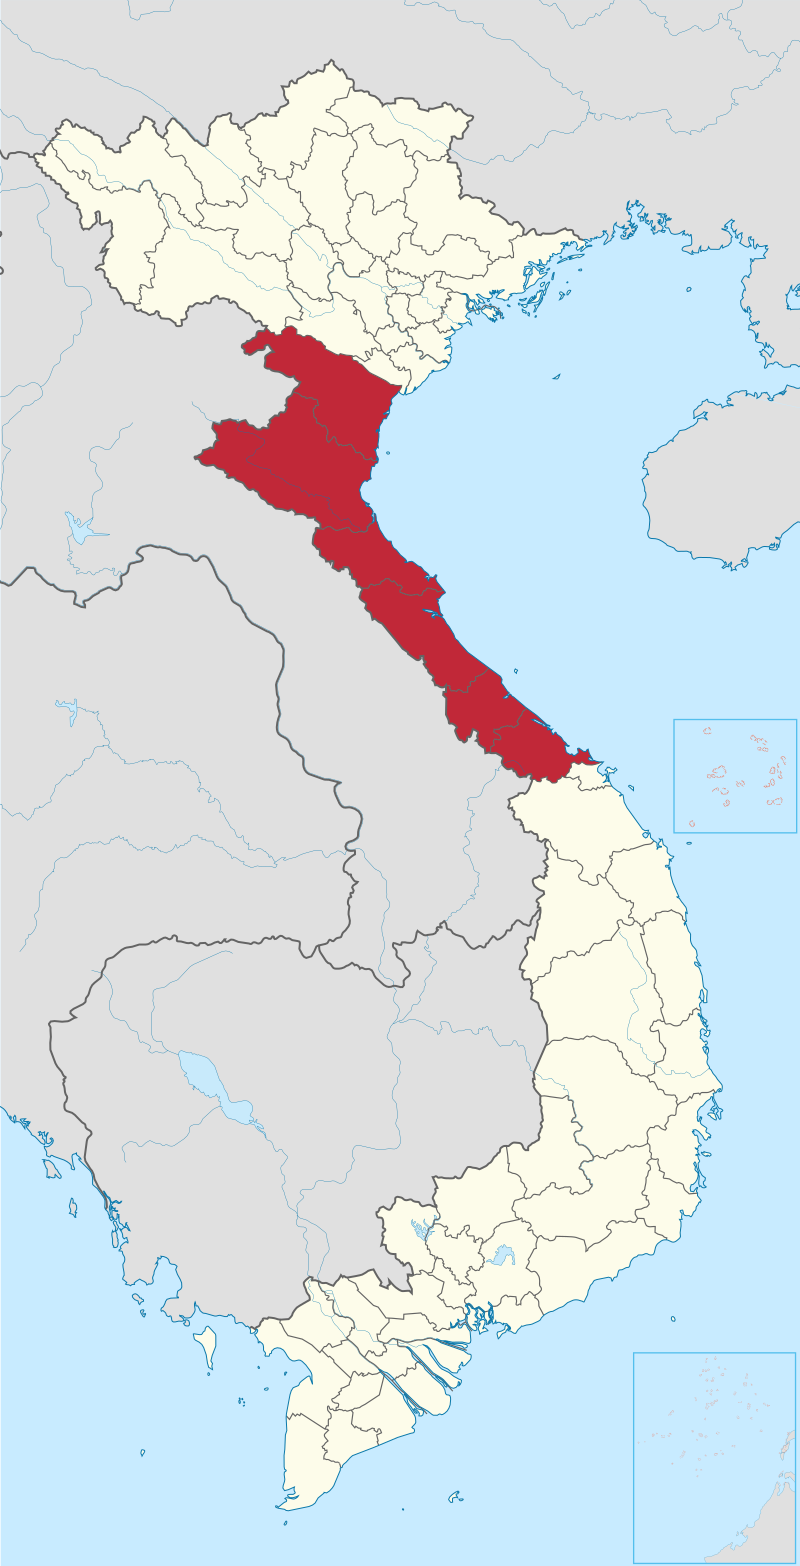 Tìm hiểu về địa lý Bắc Trung Bộ tại Wikipedia tiếng Việt và khám phá trang 1 Bản đồ vùng Bắc Trung Bộ. Đón nhận những trải nghiệm du lịch tuyệt vời trong vùng đất này với nhiều kỳ quan thiên nhiên độc đáo.